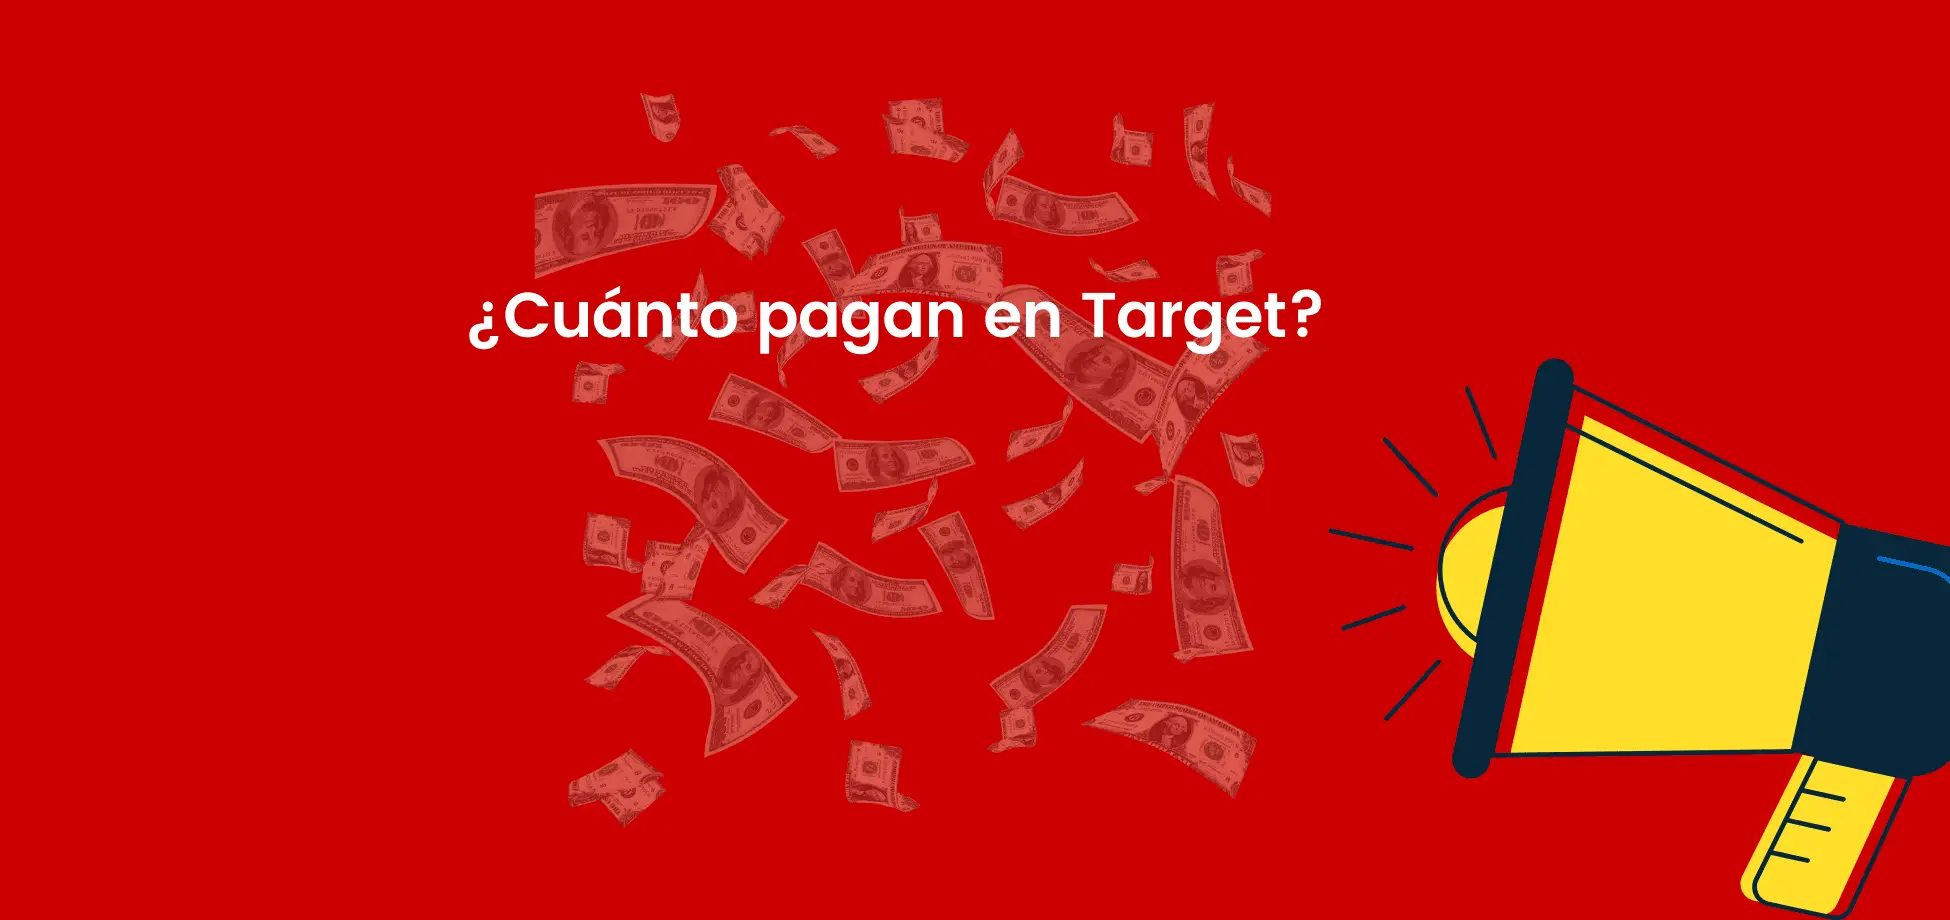 El salario inicial de Target es más alto que muchas otras tiendas.